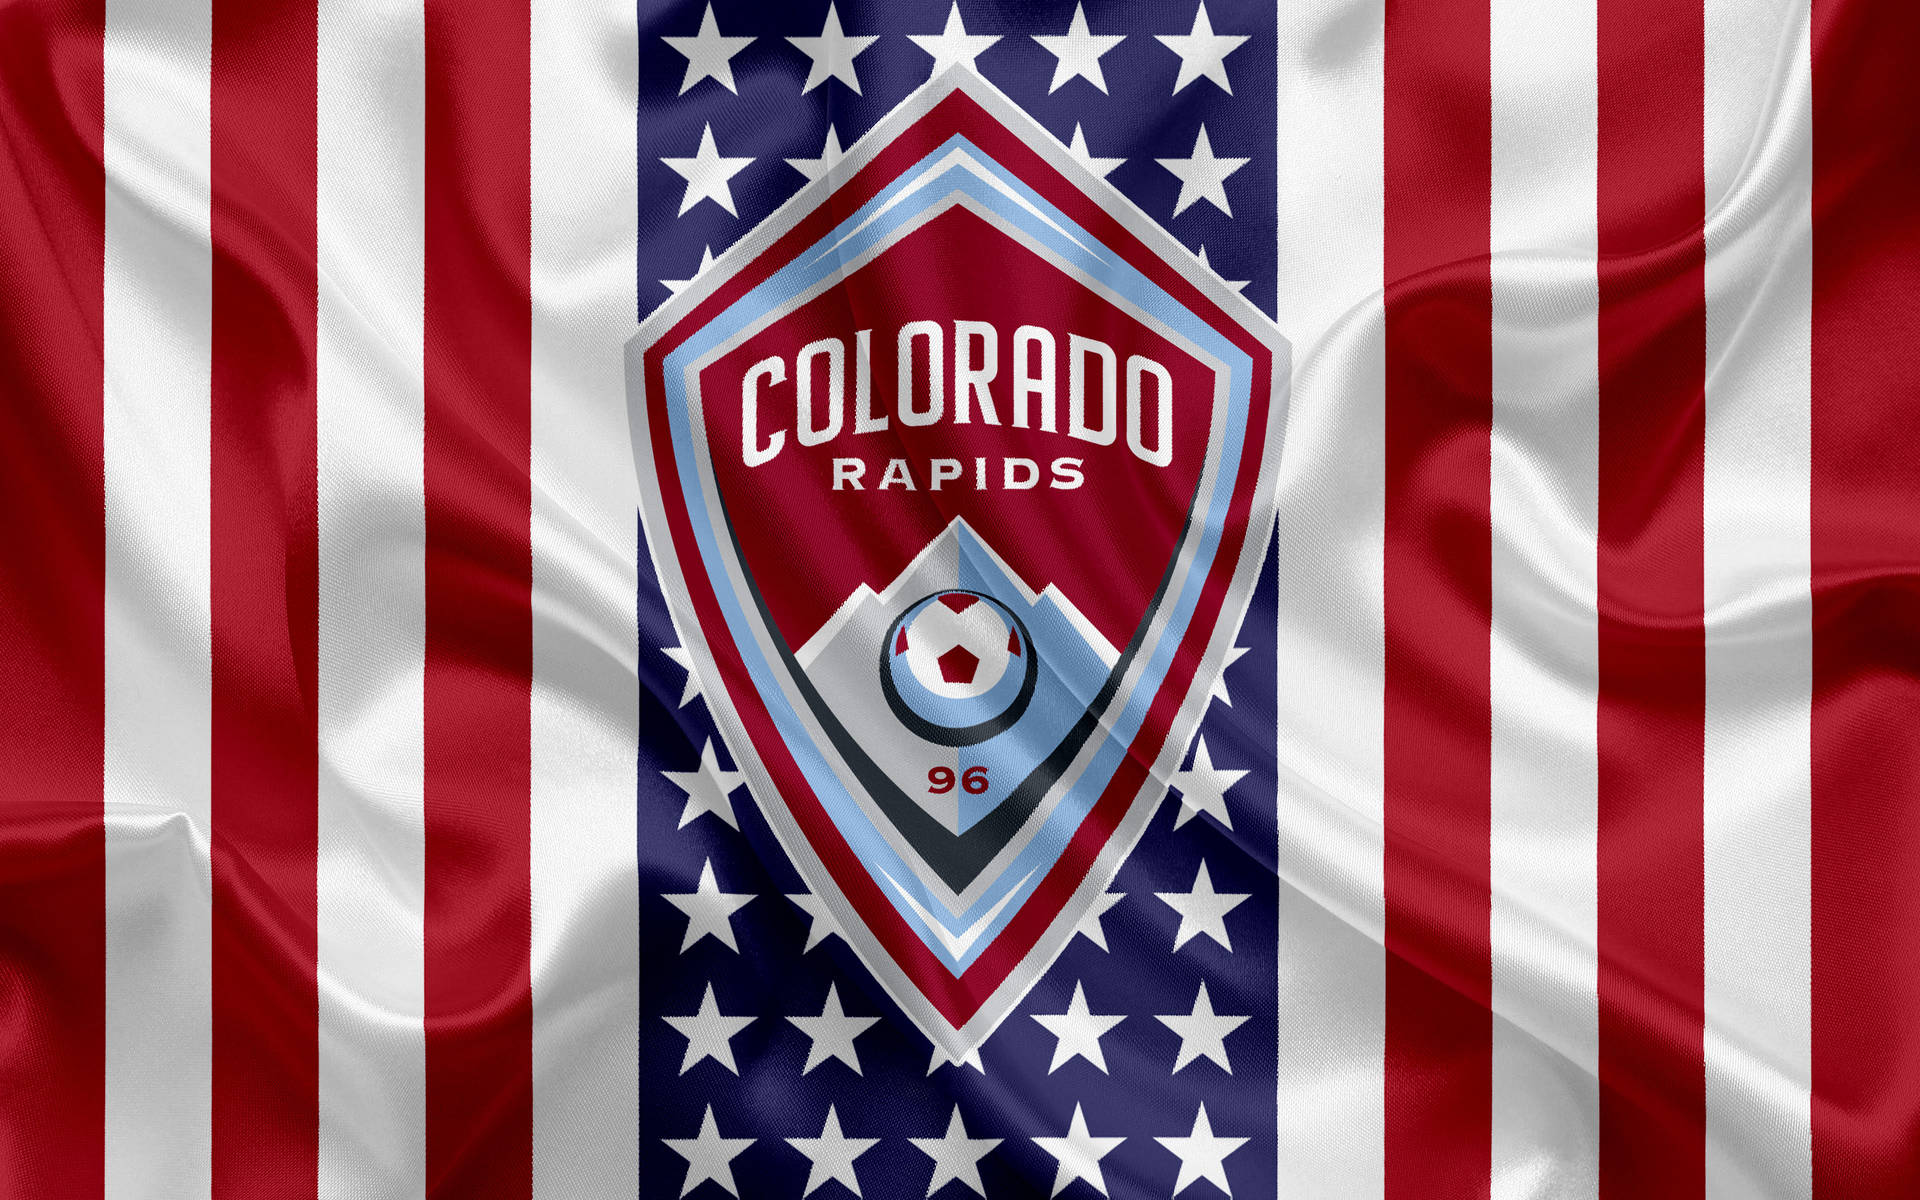 Tapet med Colorado Rapids-logoet for det amerikanske professionelle fodboldklub. Wallpaper